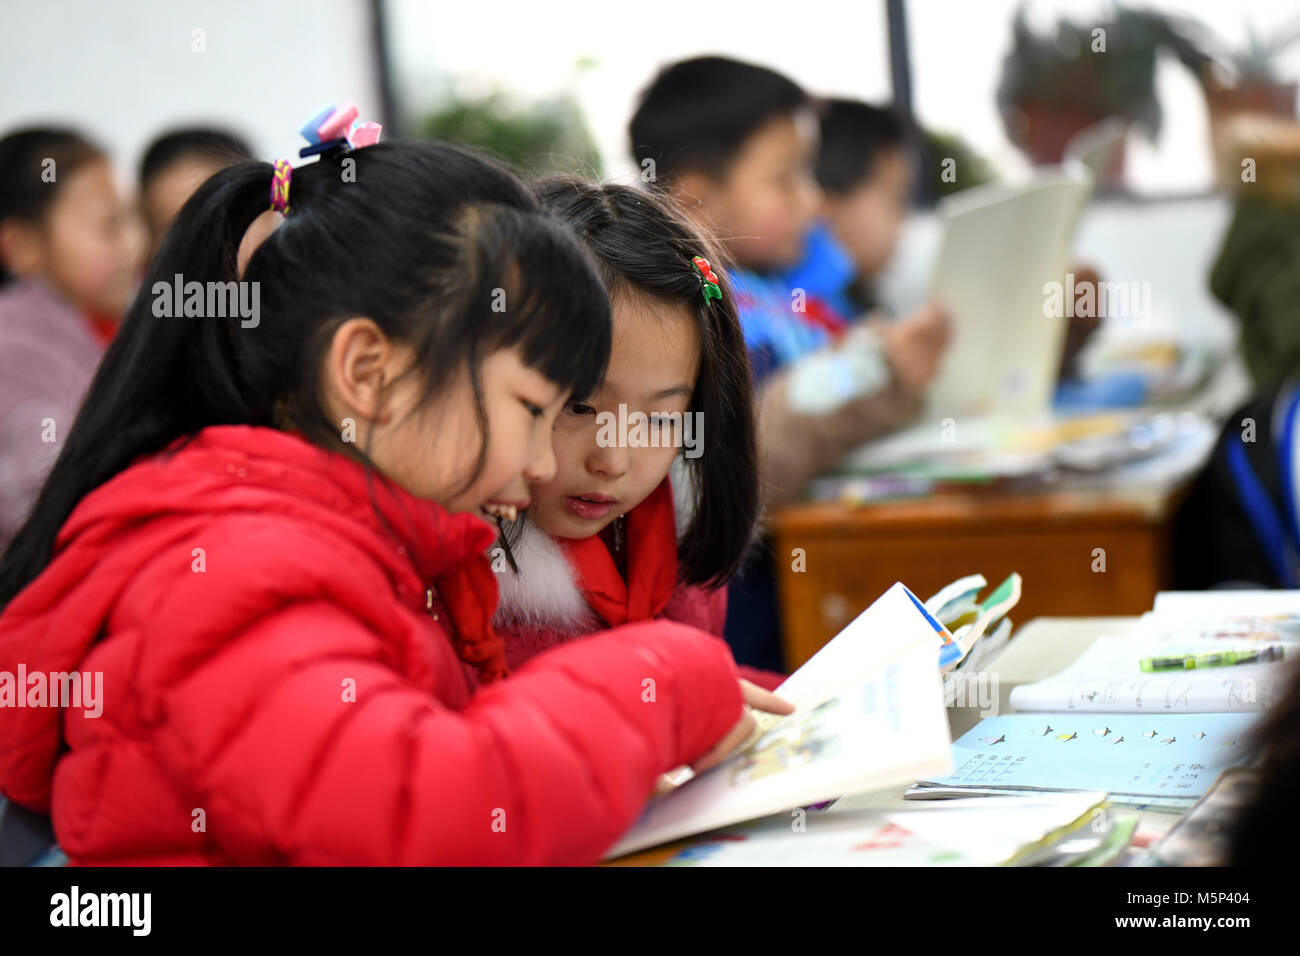 Zunyi. 25 Feb, 2018. Los alumnos de la escuela primaria cultura Zunyi leer los nuevos libros que consiguen en Zunyi, al suroeste de la provincia de Guizhou, China el 25 de febrero de 2018. Los estudiantes regresaron a la escuela y conseguimos nuevos libros de texto para saludar al nuevo semestre. Crédito: Xinhua/Alamy Live News Foto de stock